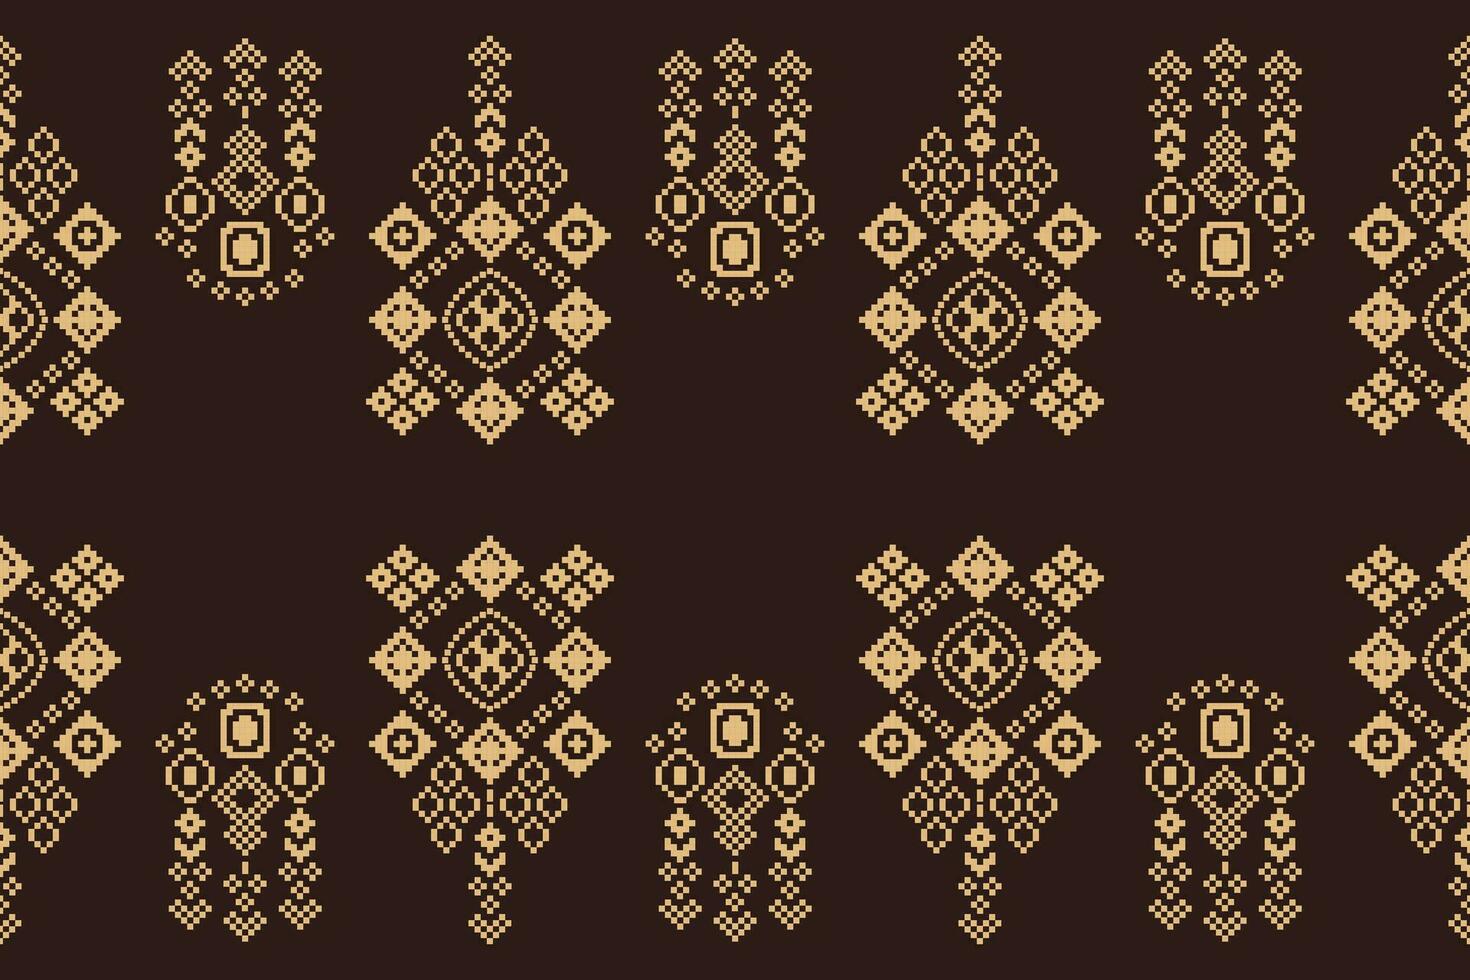 etnisch meetkundig kleding stof patroon kruis steek.ikat borduurwerk etnisch oosters pixel patroon bruin achtergrond. abstract,vector,illustratie. textuur,kleding,sjaal,decoratie,tapijt,zijde behang. vector